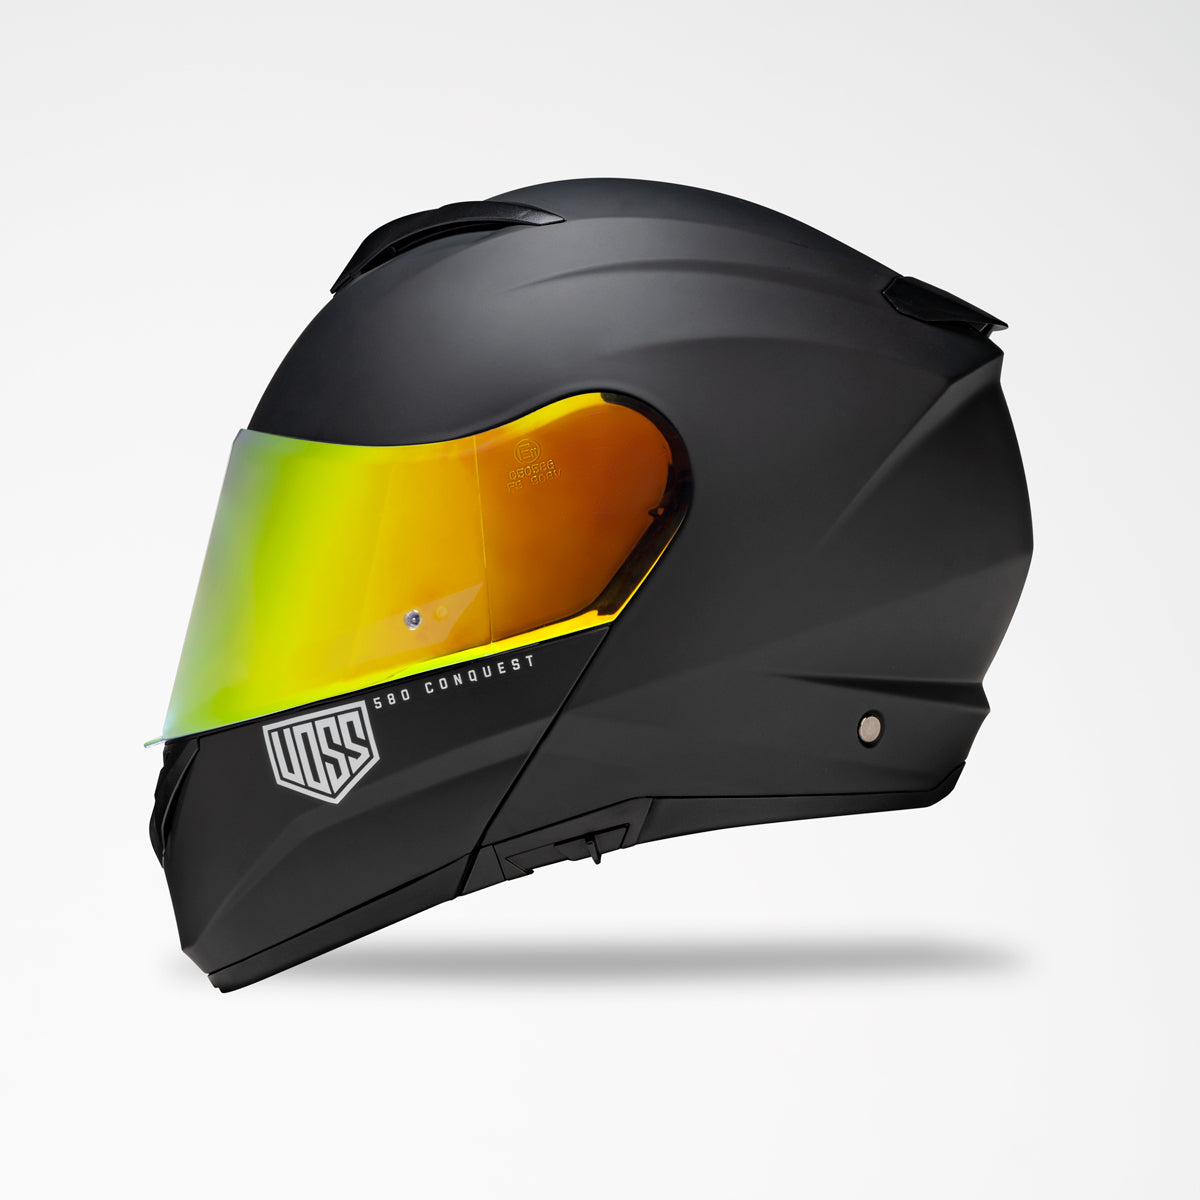 VOSS 580 CONQUEST BLACK HELMET - Voss Helmets